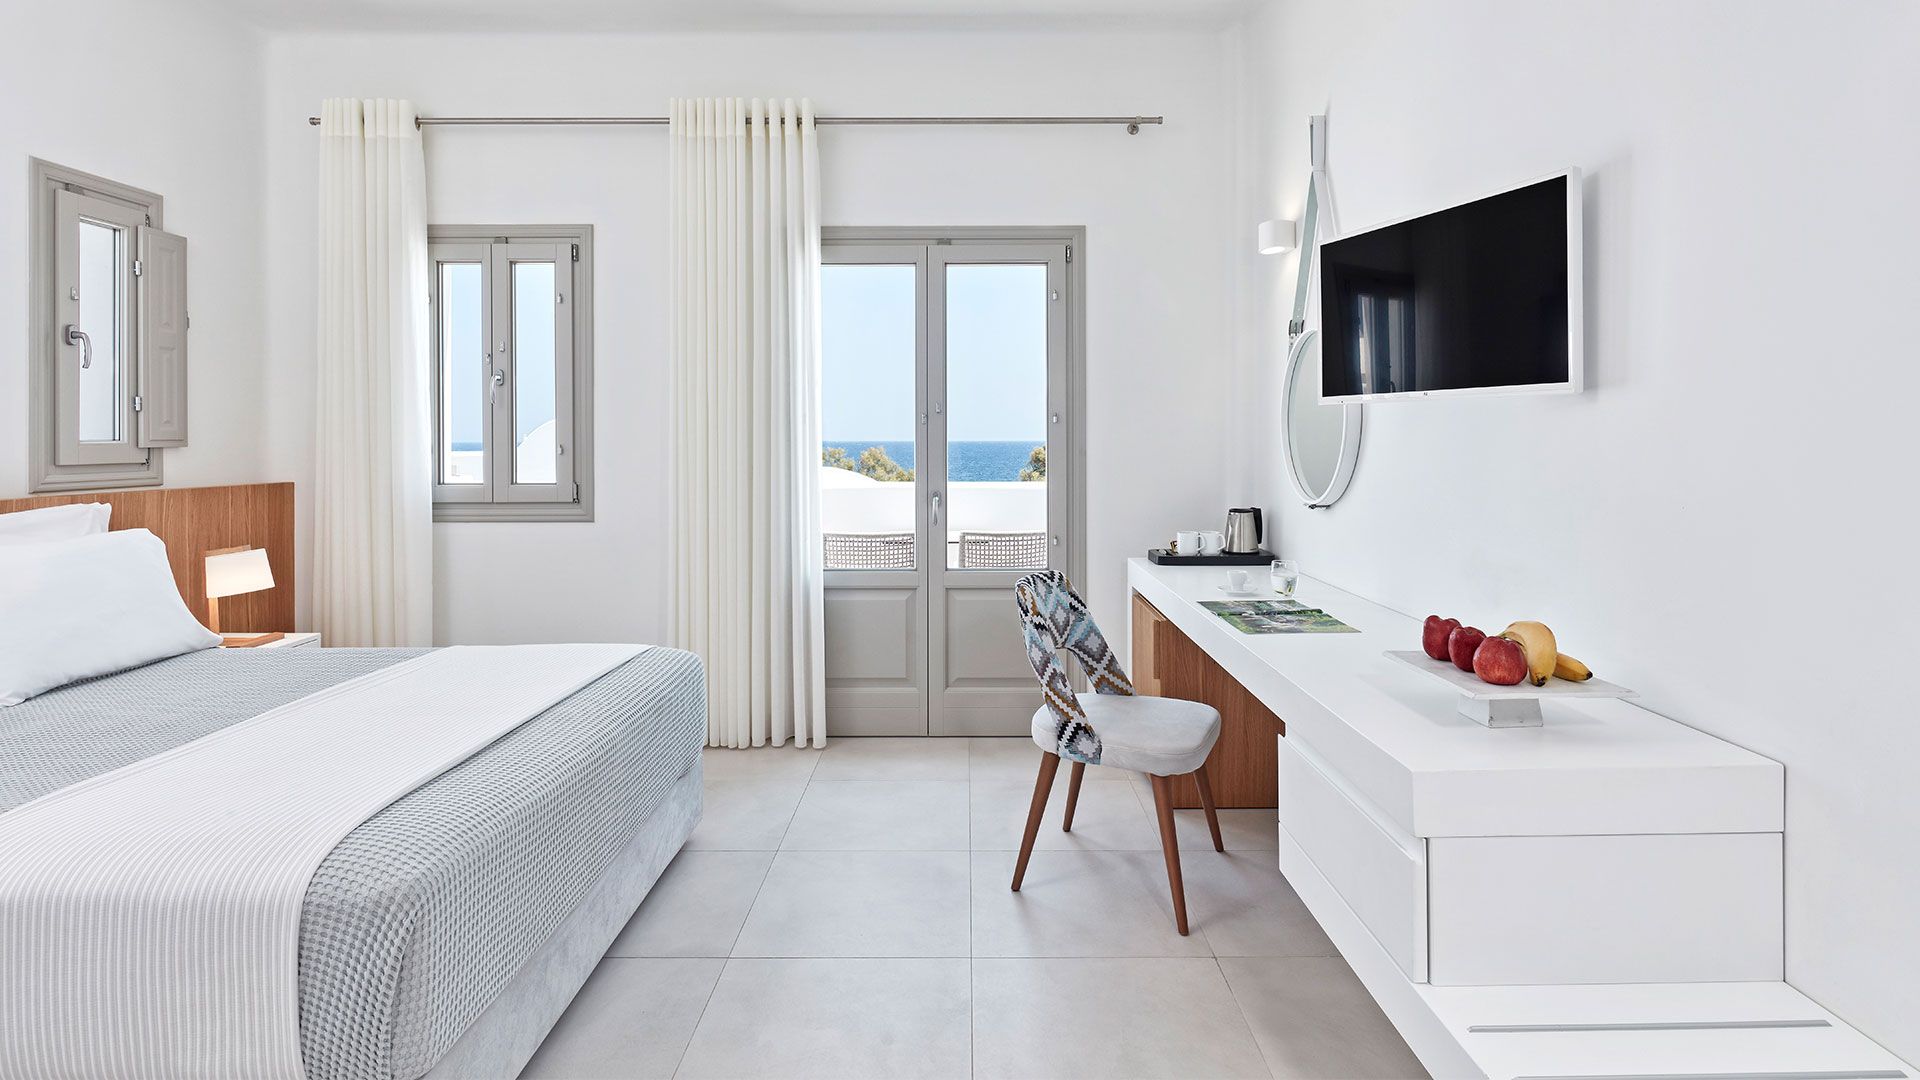 Κατασκευή & Interior Design 5* Ξενοδοχείου, Παραλία Καμαρίου, Σαντορίνη